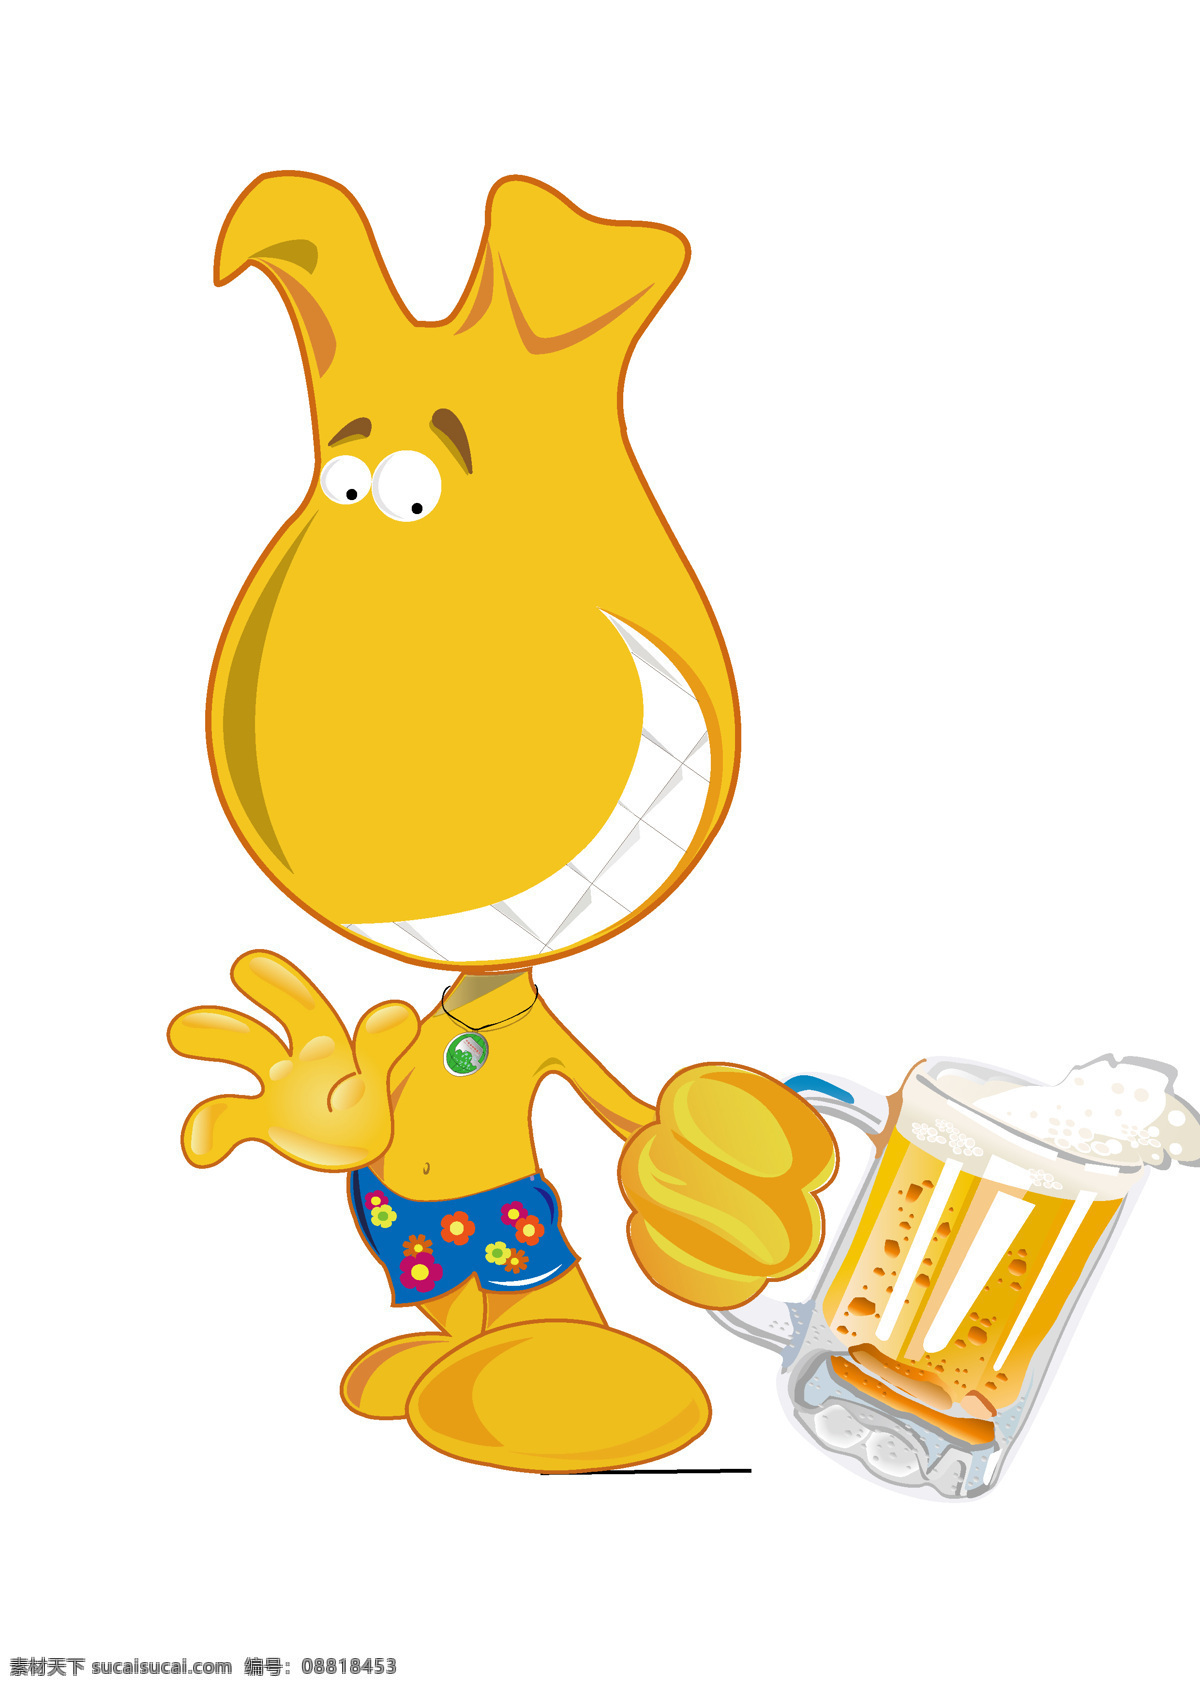 吉祥物 动漫动画 动漫人物 模板下载 啤酒 设计素材 羞涩 咧嘴 矢量图 日常生活